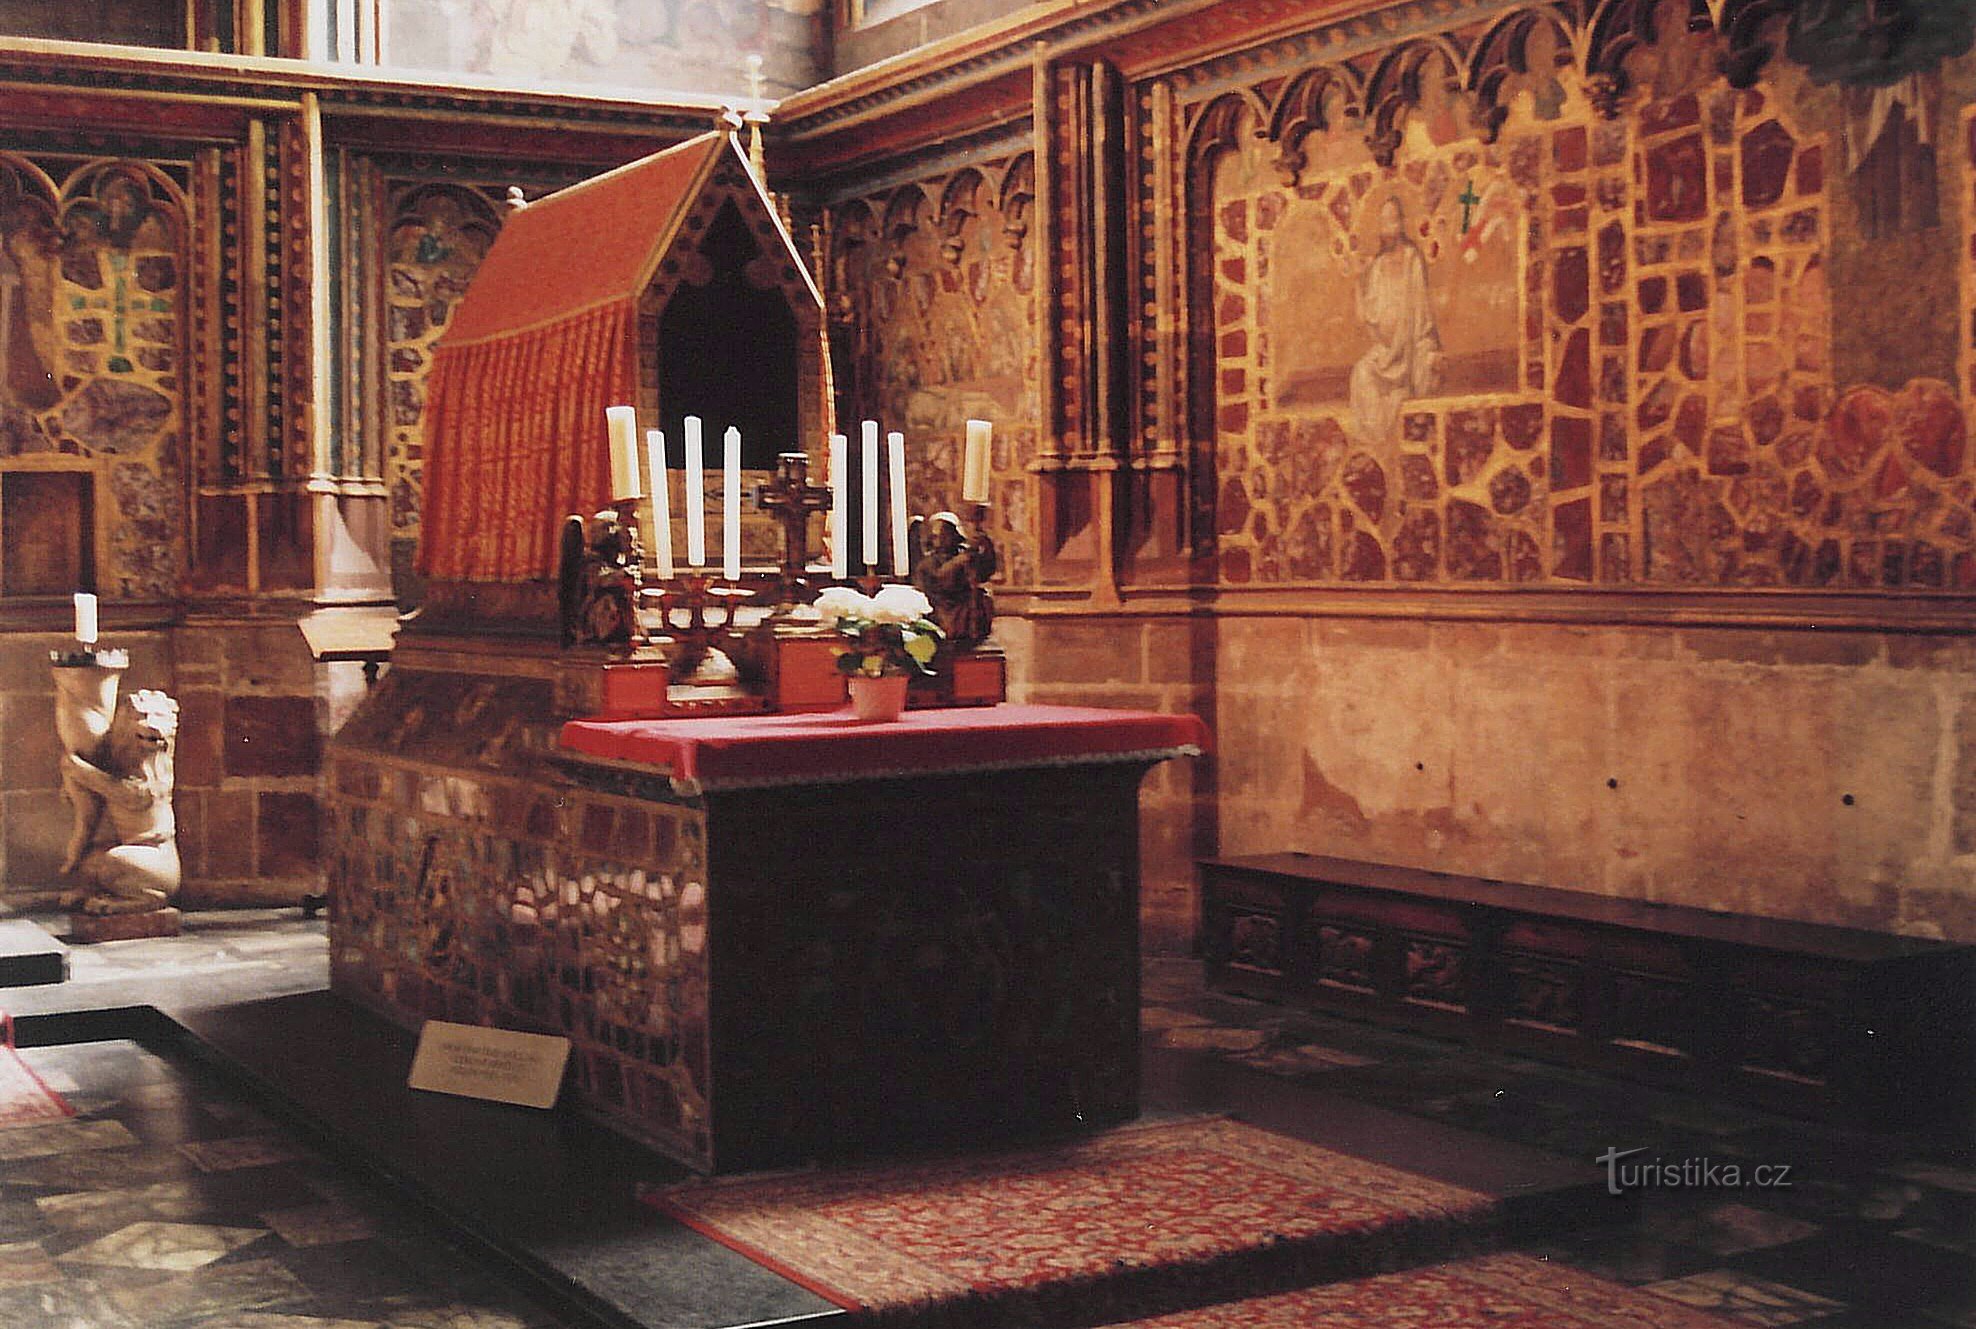 Praga - kapela sv. Vaclava, najdragocenejši umetniški zaklad srednje Evrope